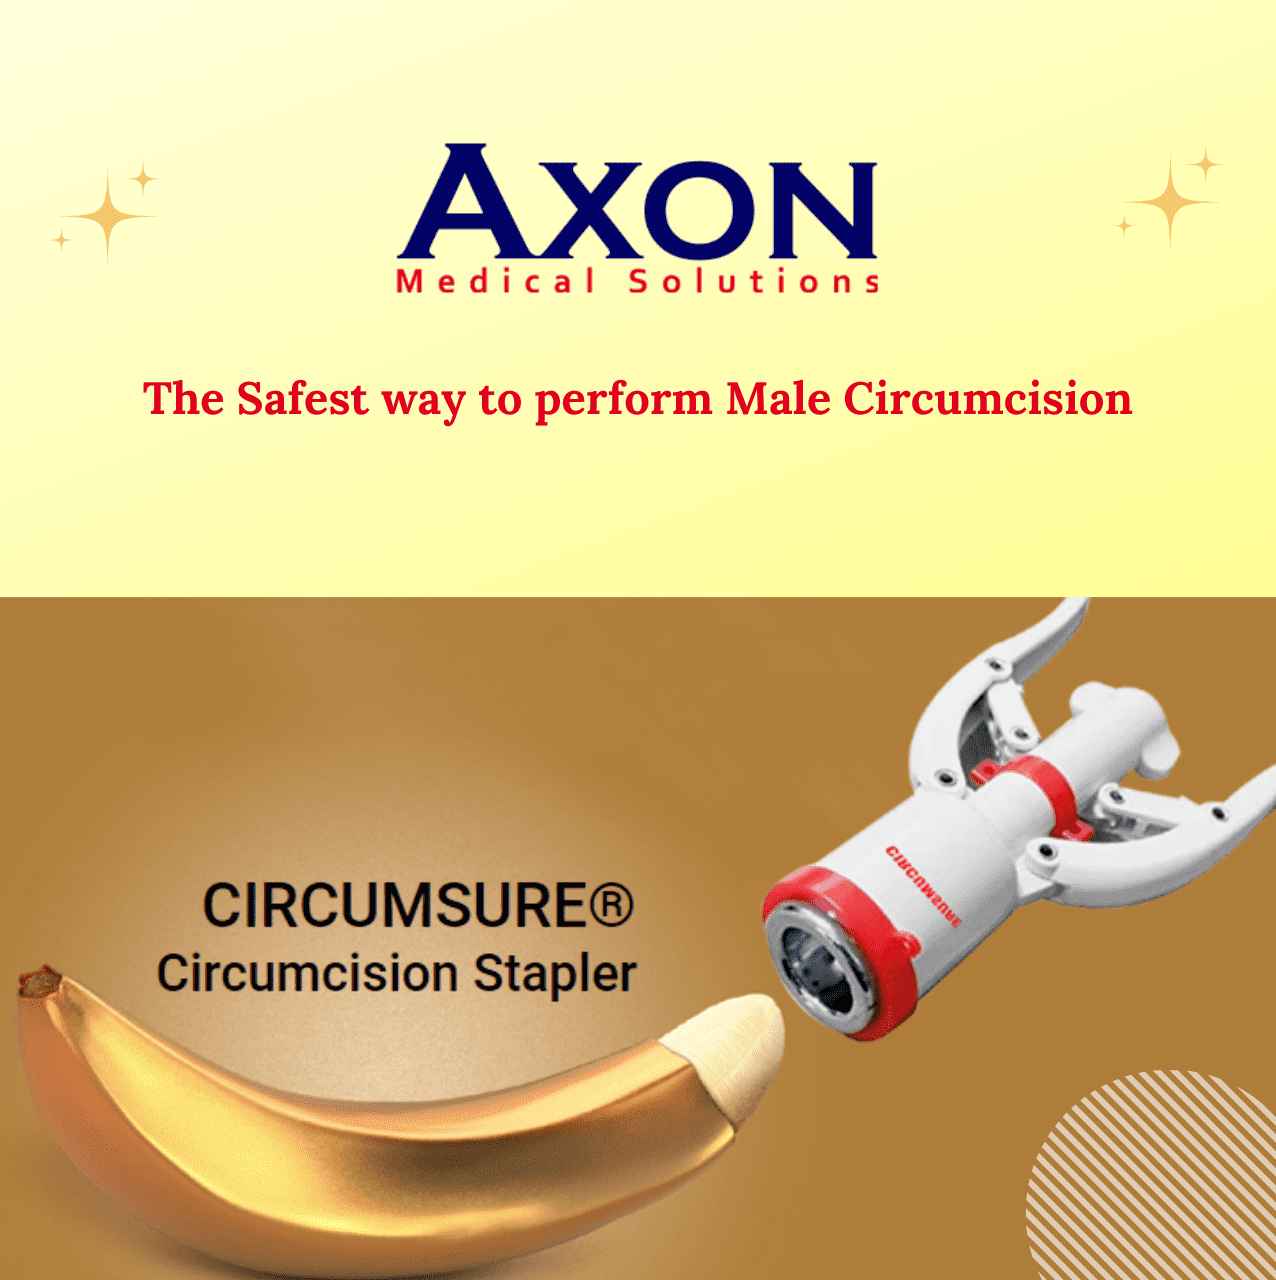  CIRCUMSURE Circumcision Stapler, The Safest way to perform Male Circumcision